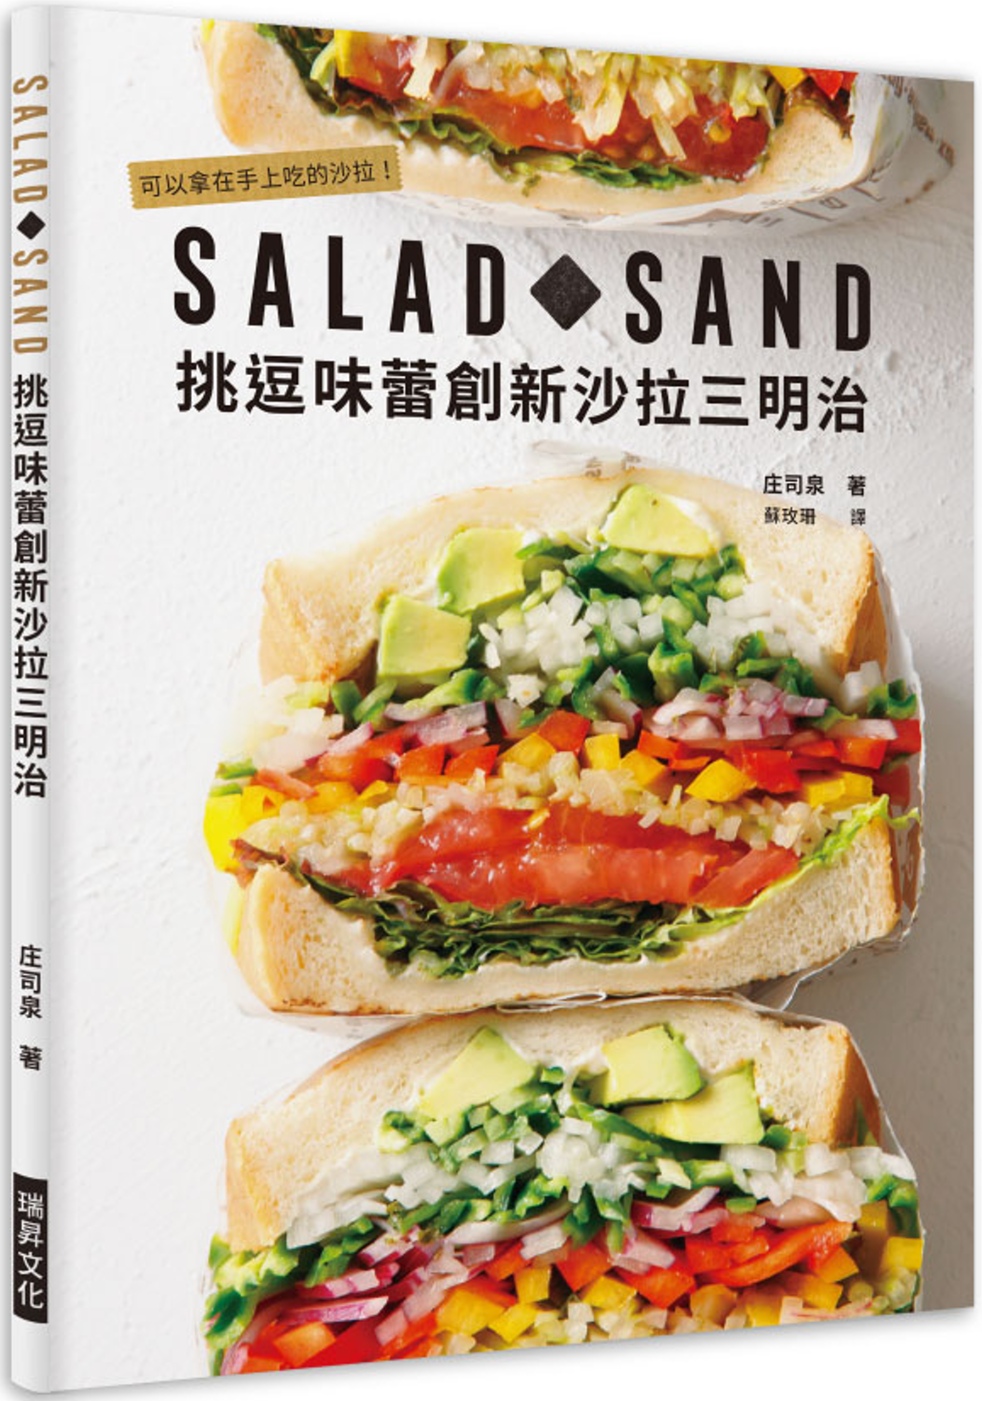 SALAD SAND 挑逗味蕾創新沙拉三明治：可以拿在手上吃的沙拉!